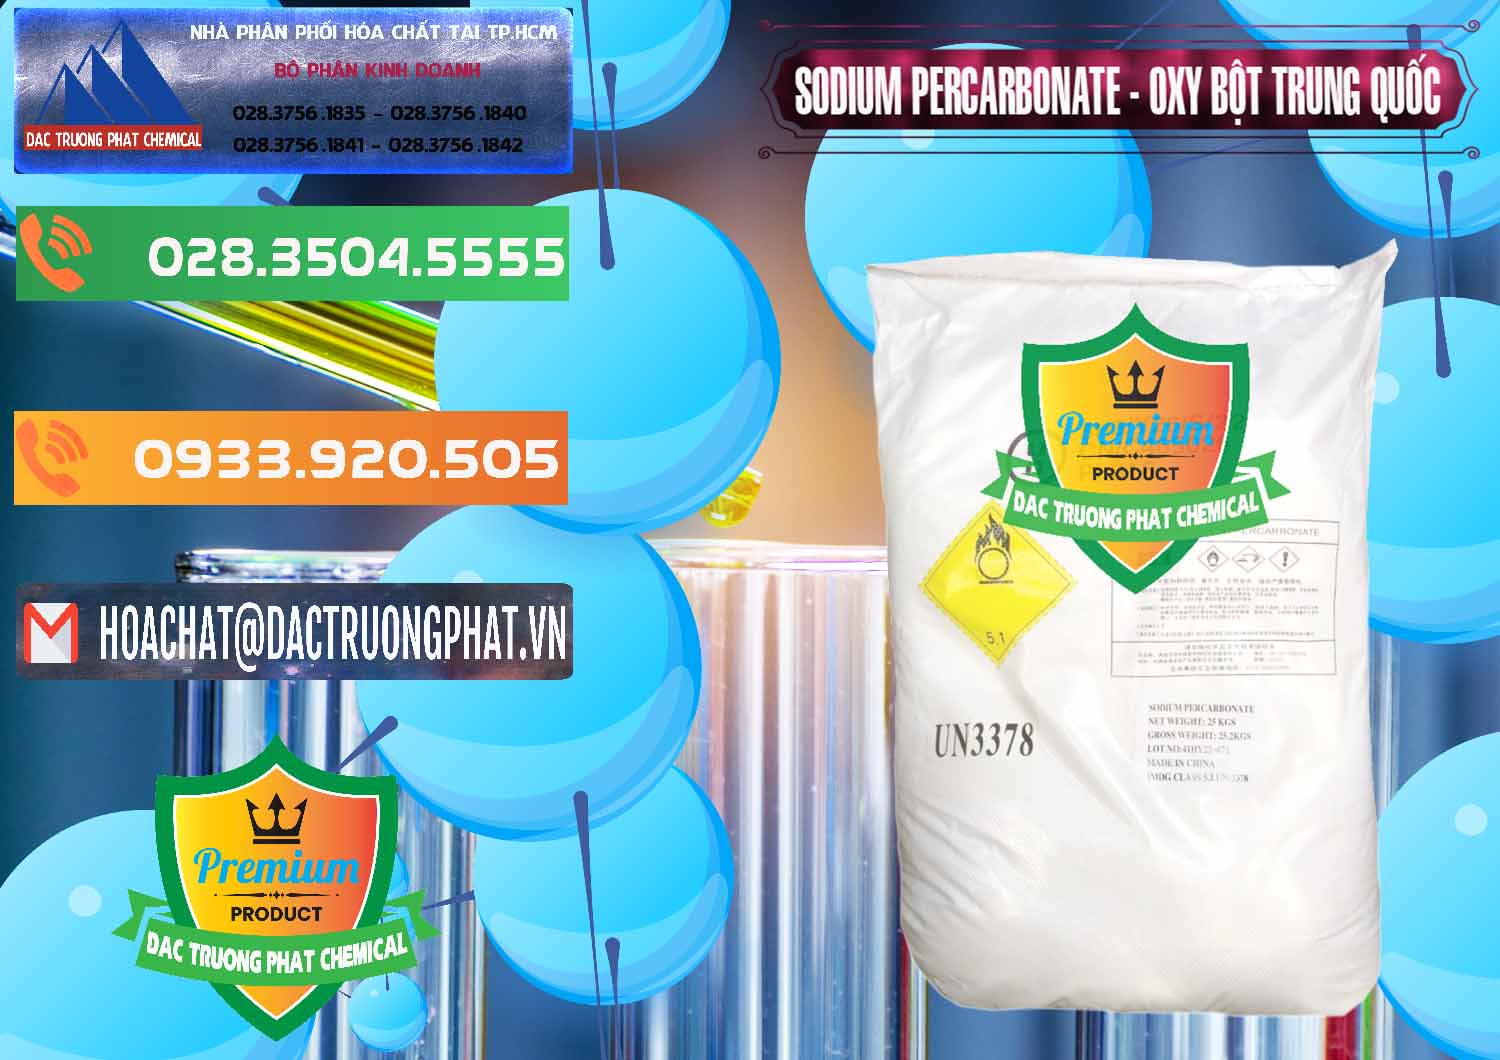 Công ty bán - phân phối Sodium Percarbonate Dạng Bột Trung Quốc China - 0390 - Phân phối - cung ứng hóa chất tại TP.HCM - hoachatxulynuoc.com.vn